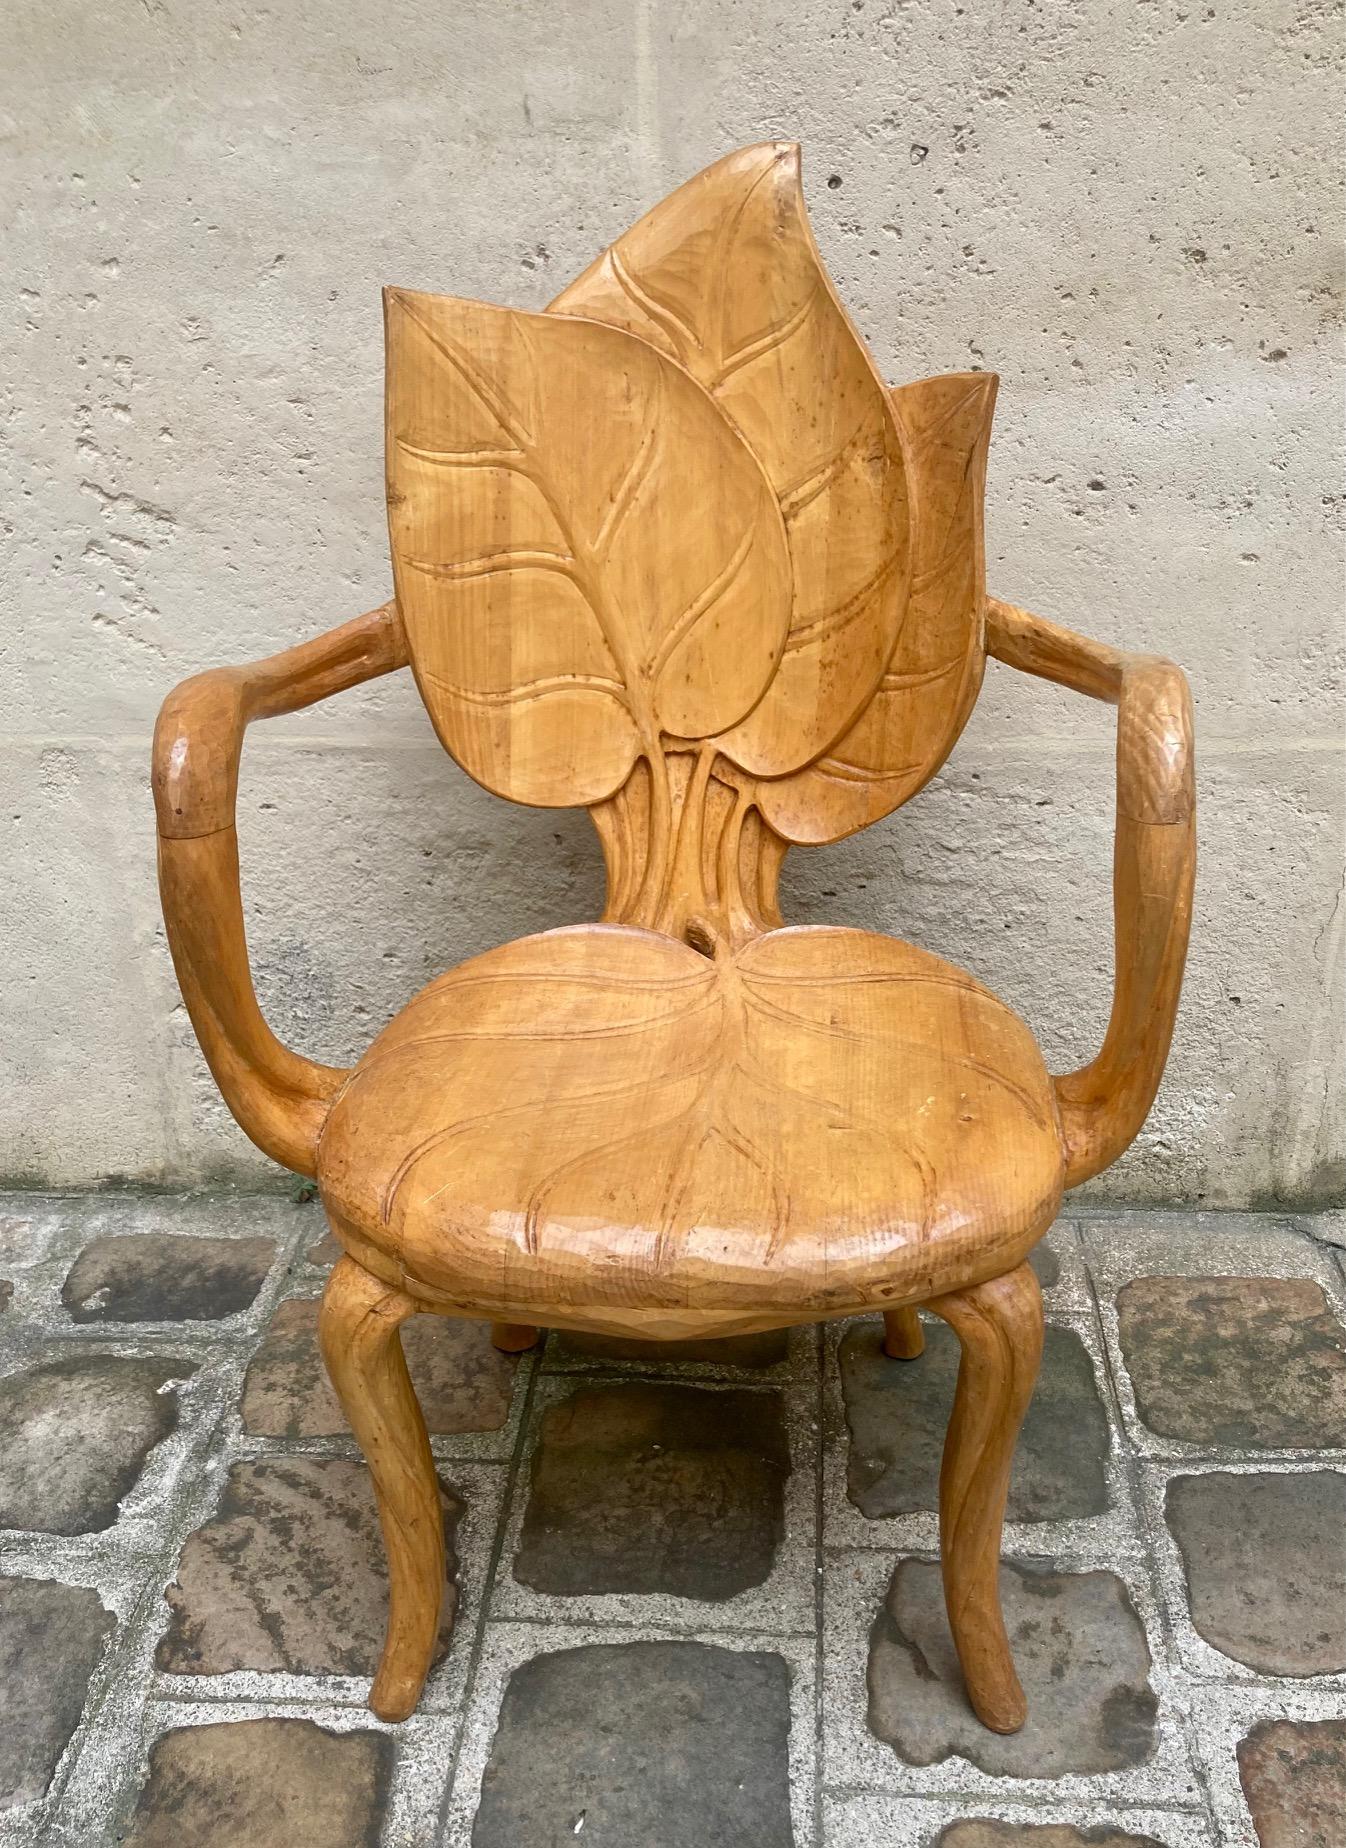 Sessel aus geschnitztem Lindenholz von Fiorenzo Bartolozzi und Giuseppe Maioli. 
Die Rückenlehne und die Sitzfläche sind mit geschnitzten Blättern verziert. 
Organisch geformte Arme und Füße.
Werkstattstempel unterhalb des Sitzes.
Florenz,